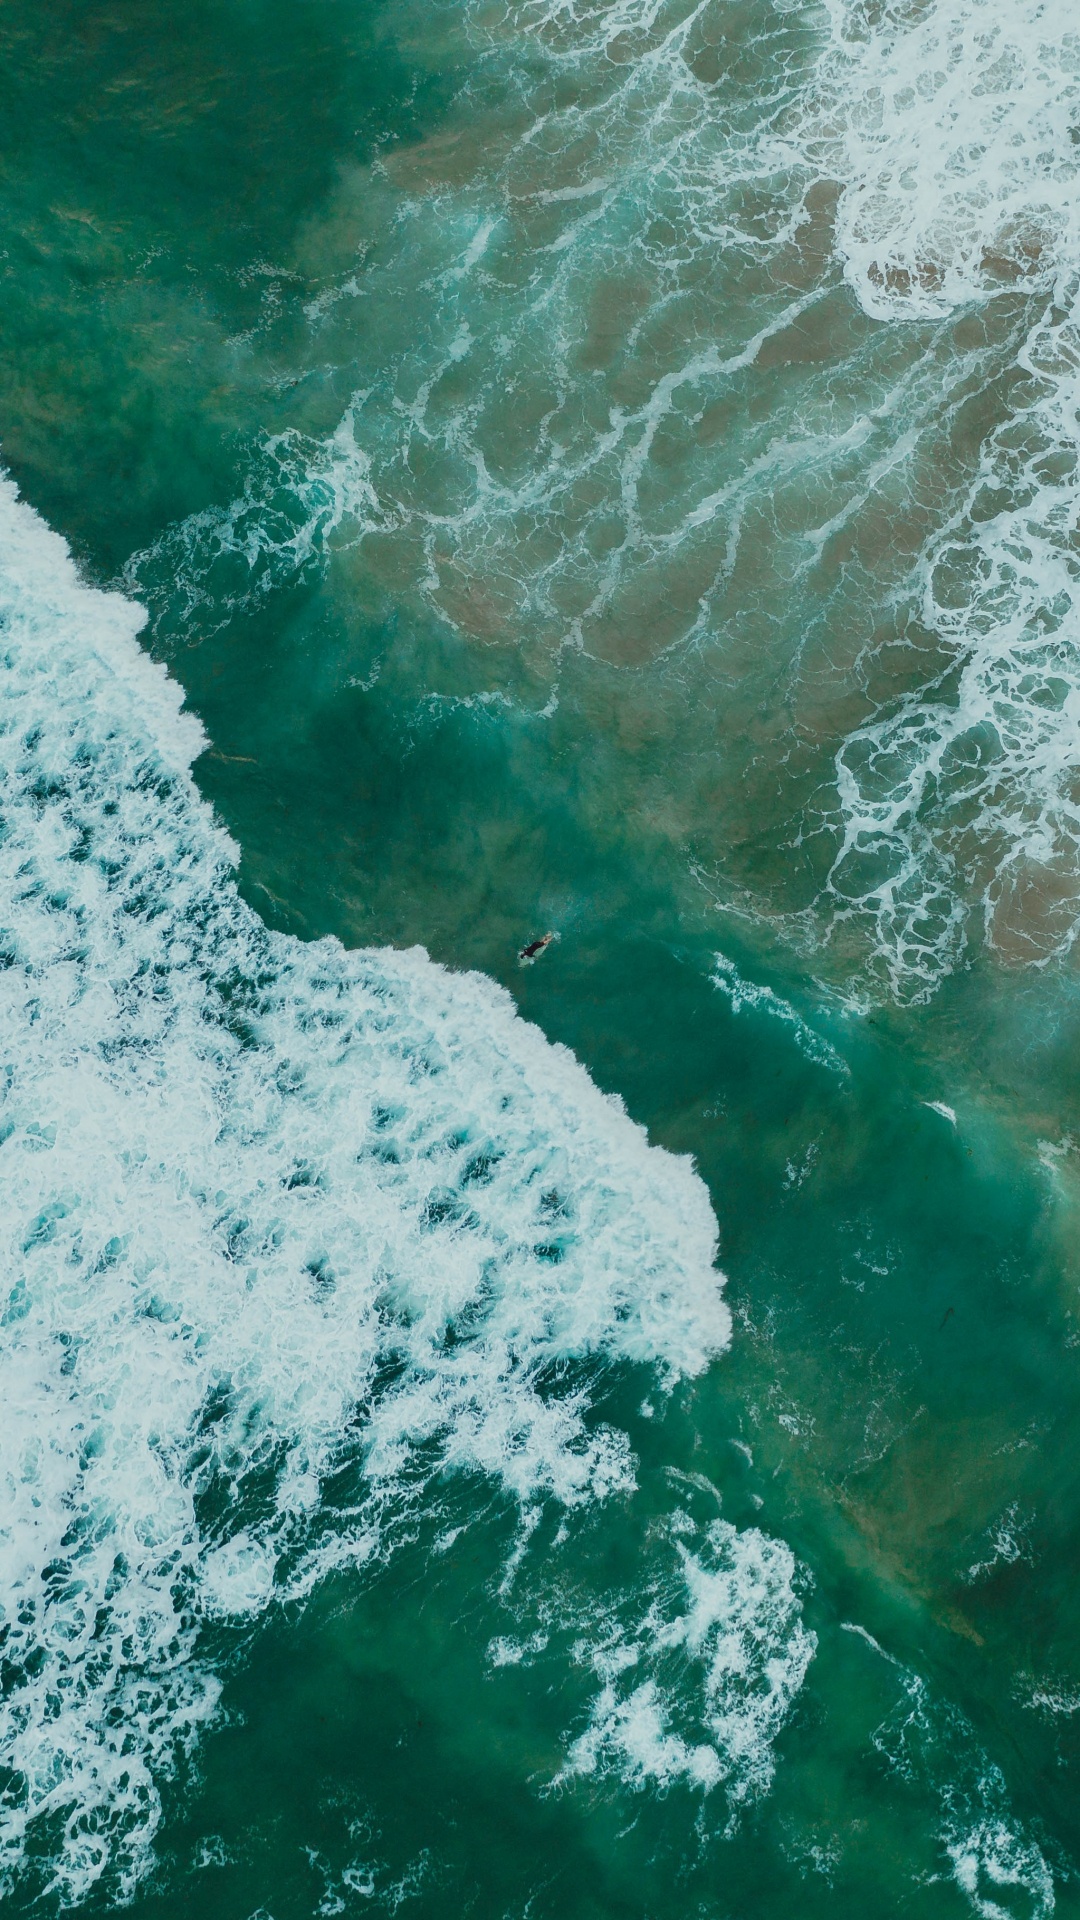 Oceano, Mar, el Viento de la Onda, Agua, Verde. Wallpaper in 1080x1920 Resolution